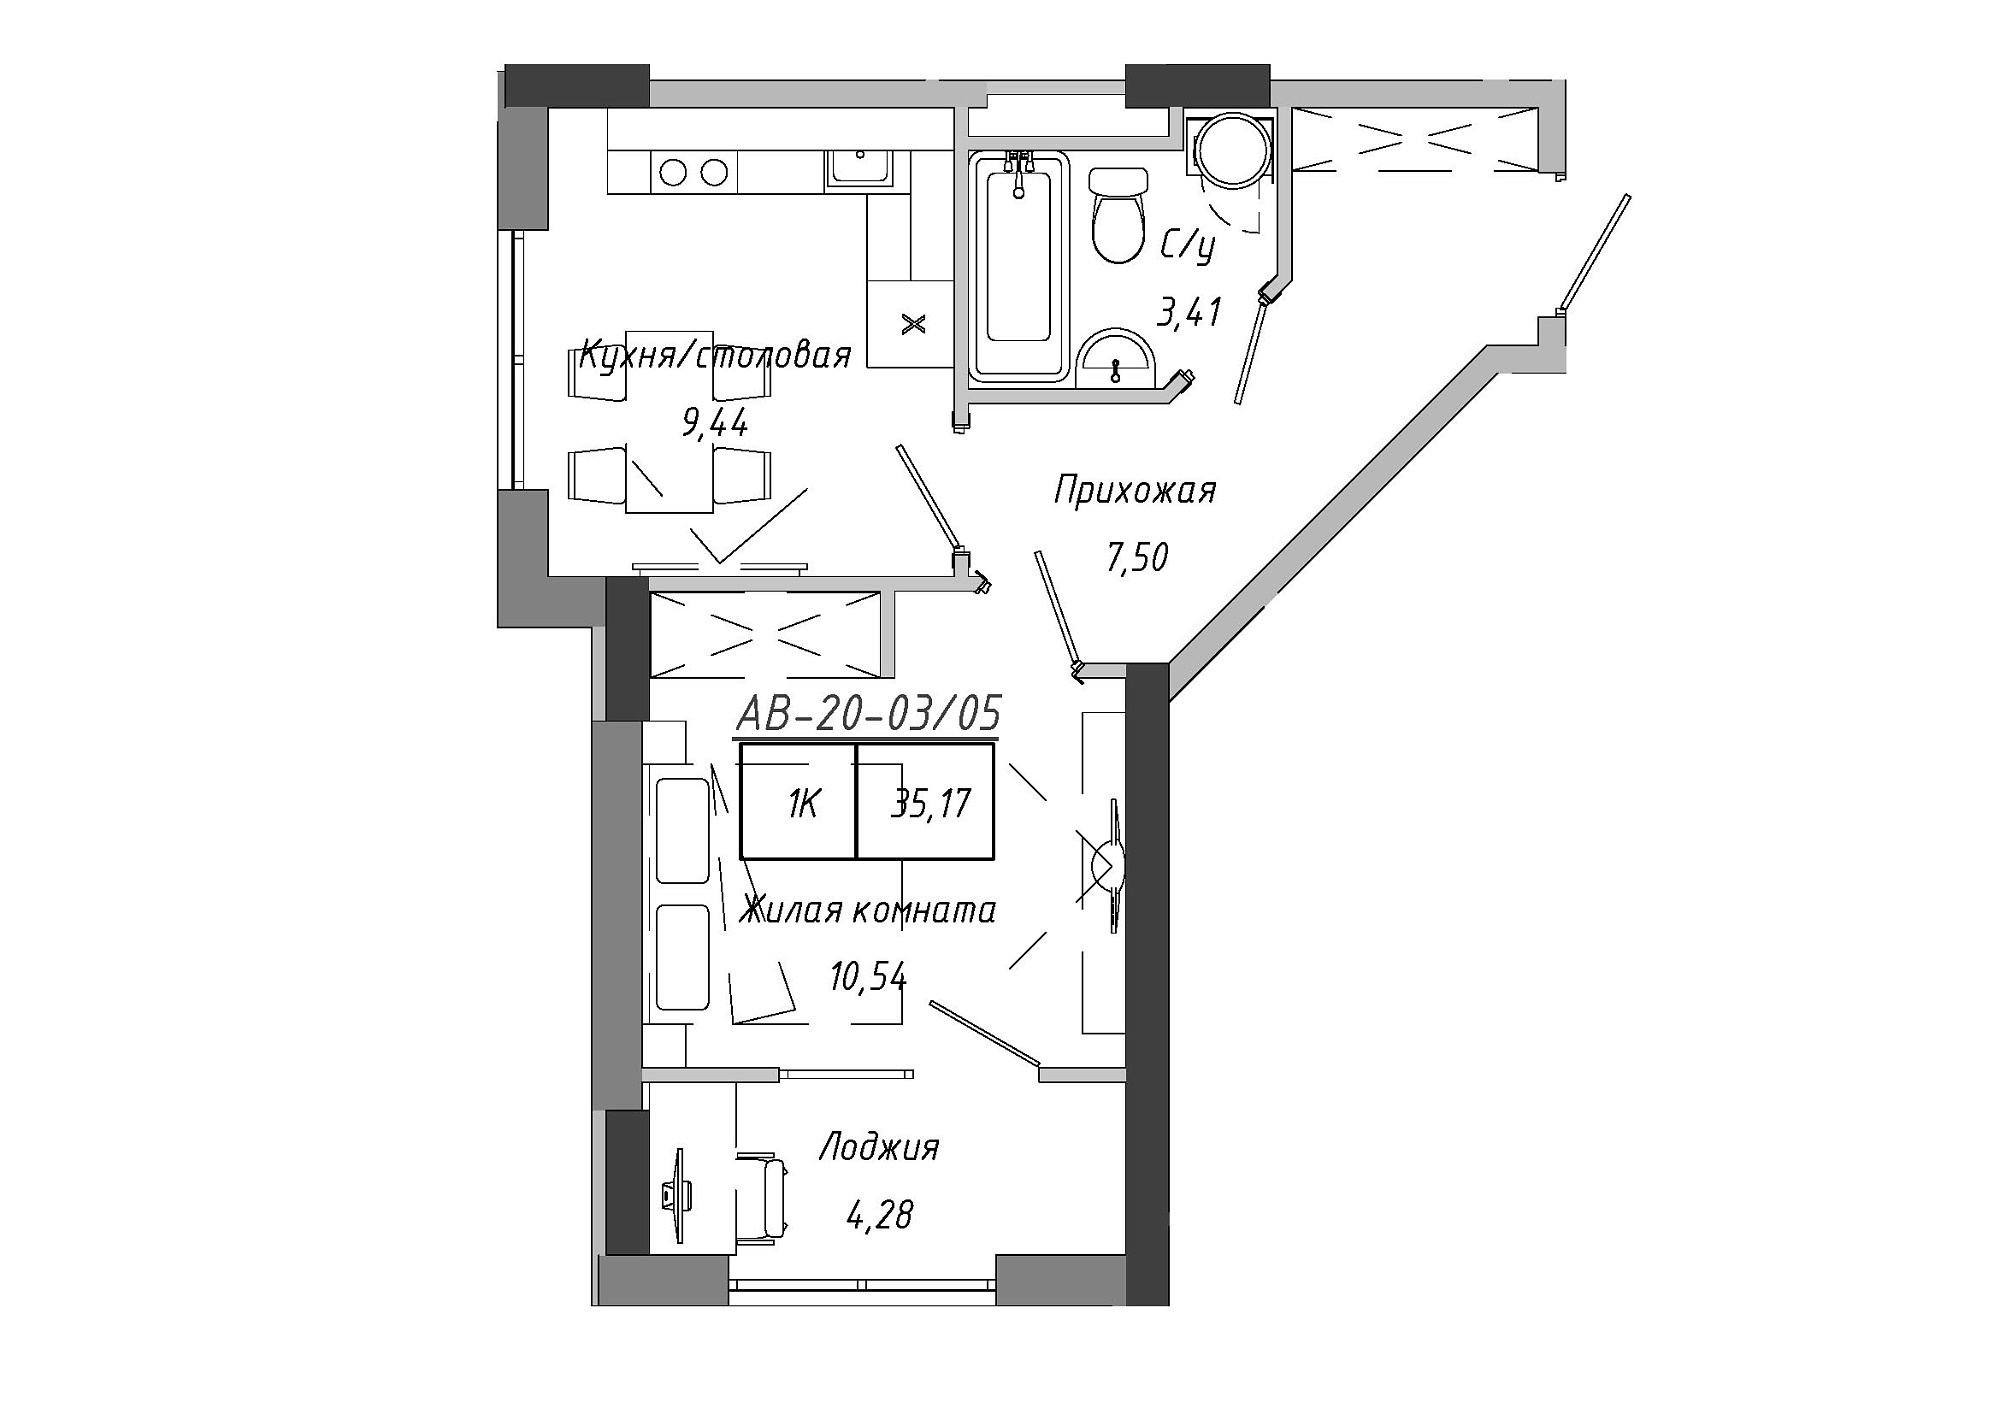 Планировка 1-к квартира площей 35.17м2, AB-20-03/00005.